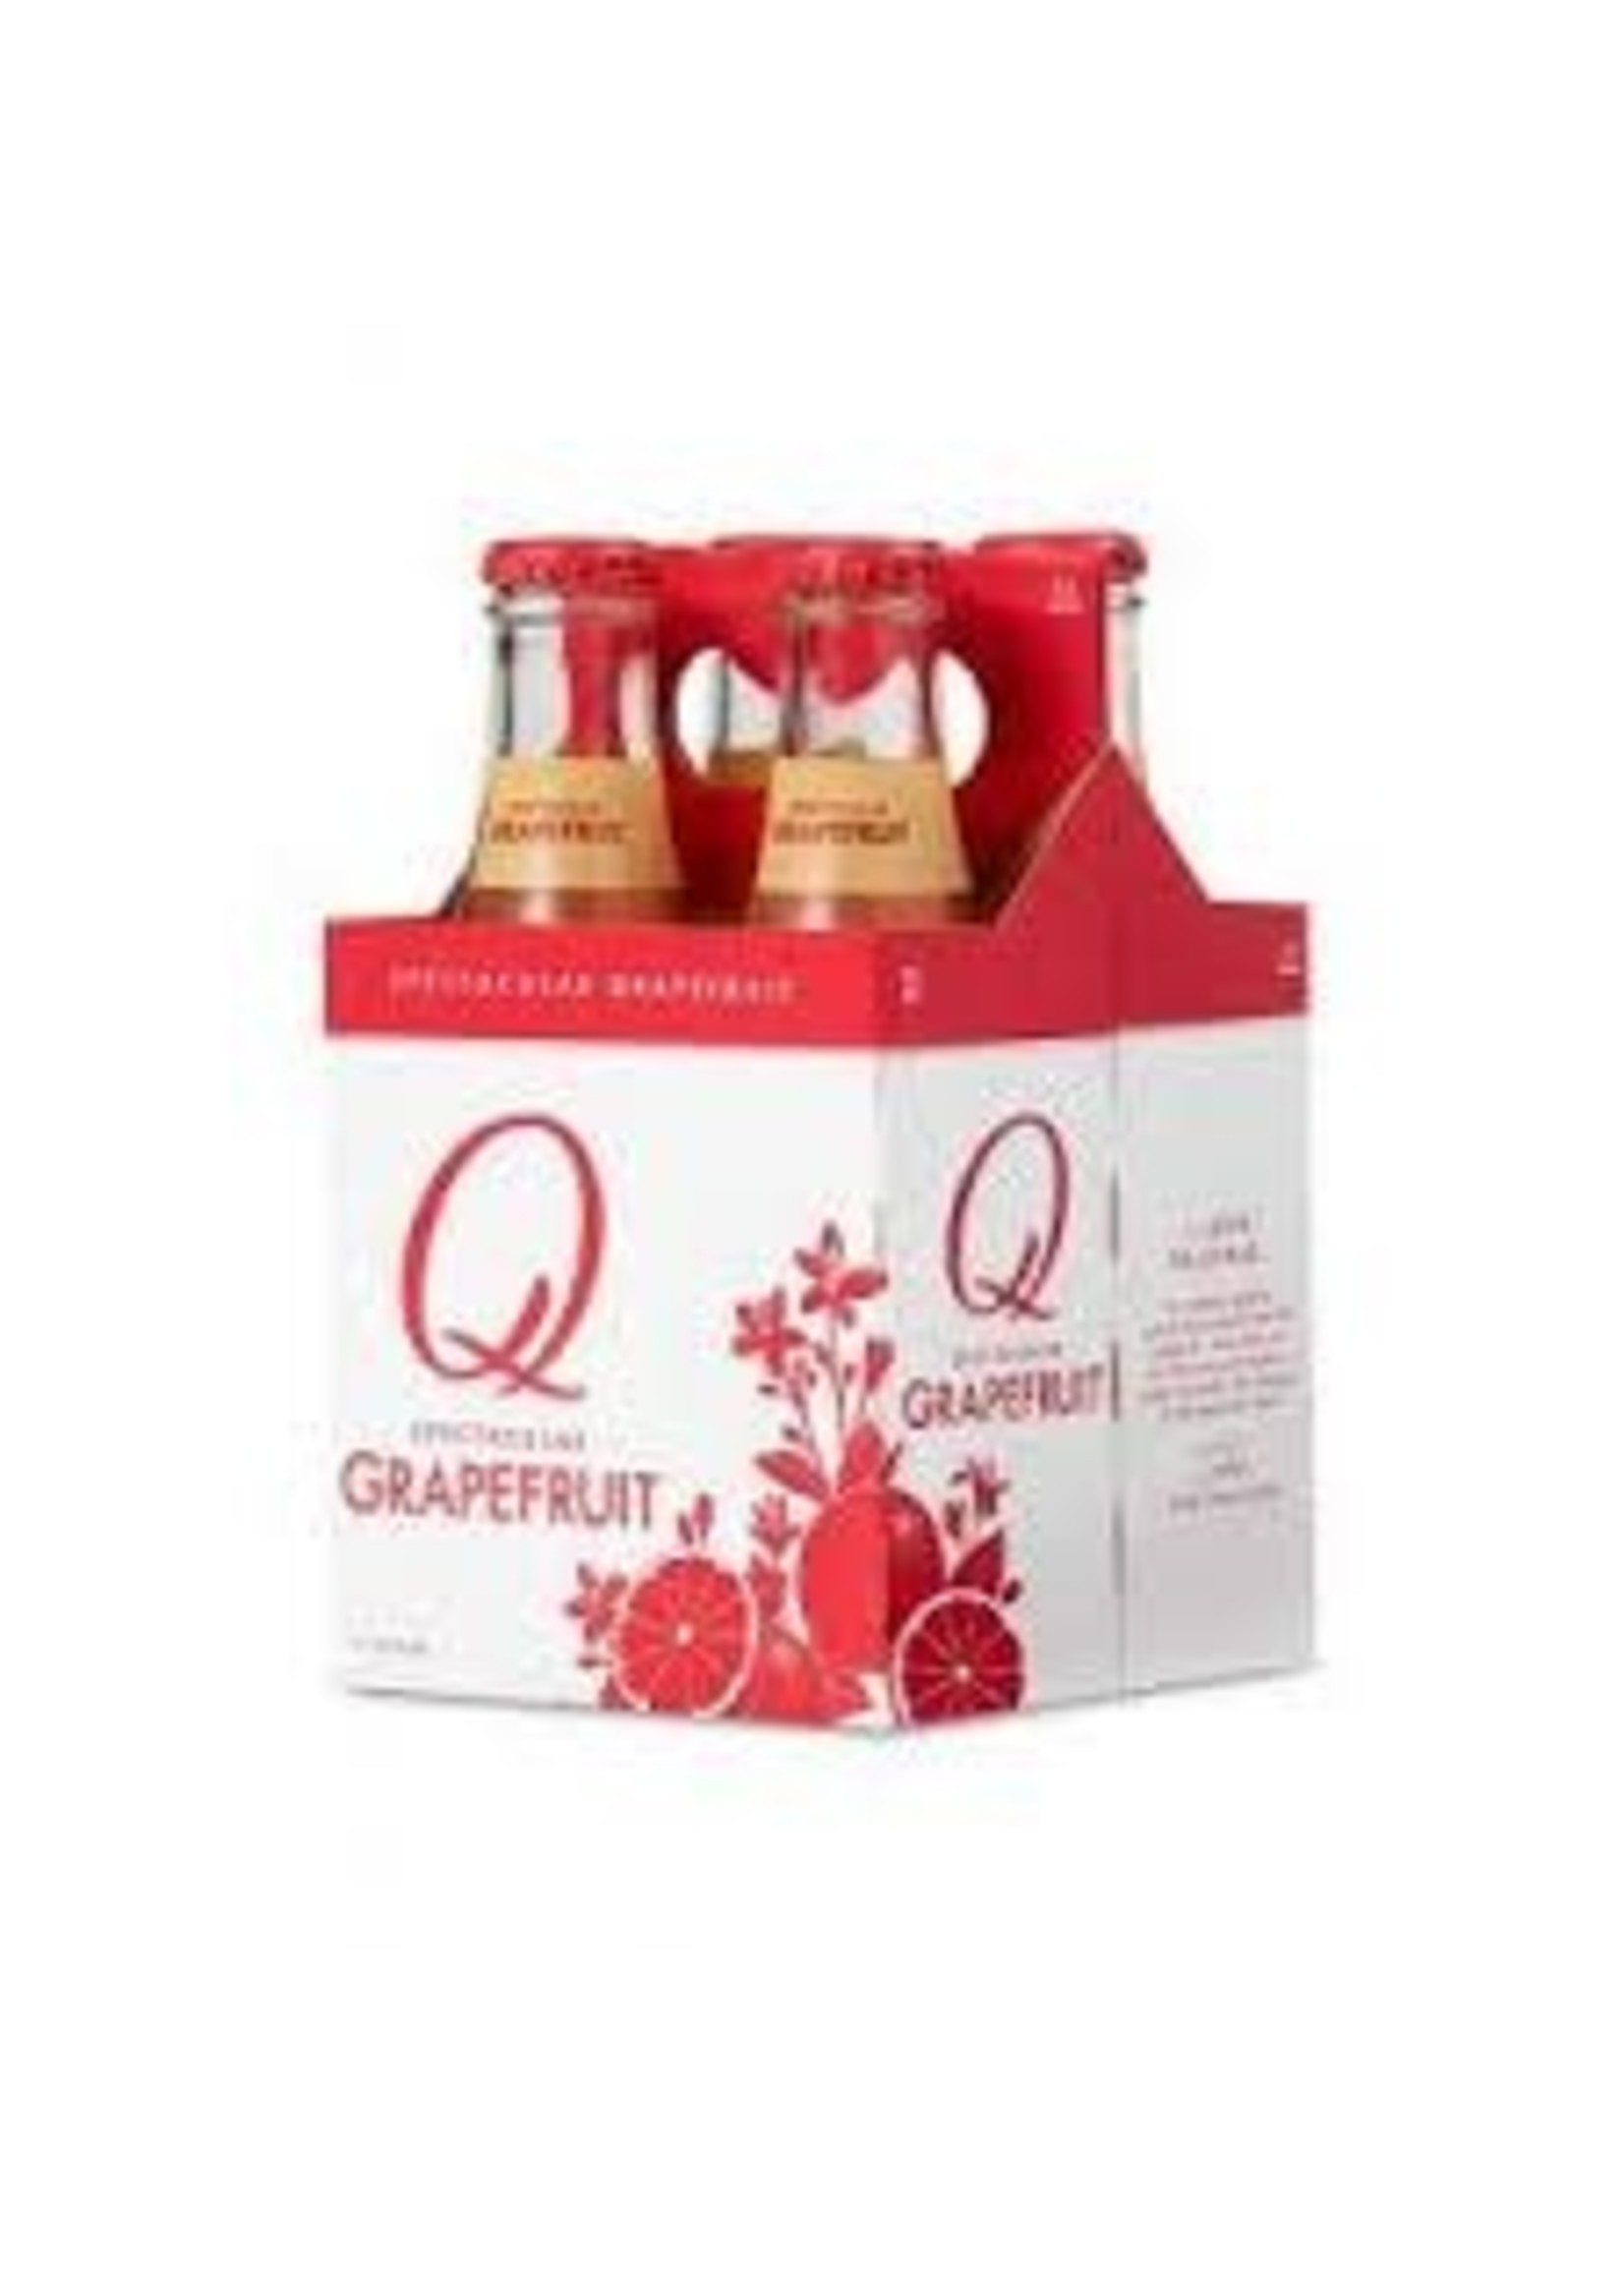 Q Q	GRAPEFRUIT 4PK BTLS	6.7 OZ